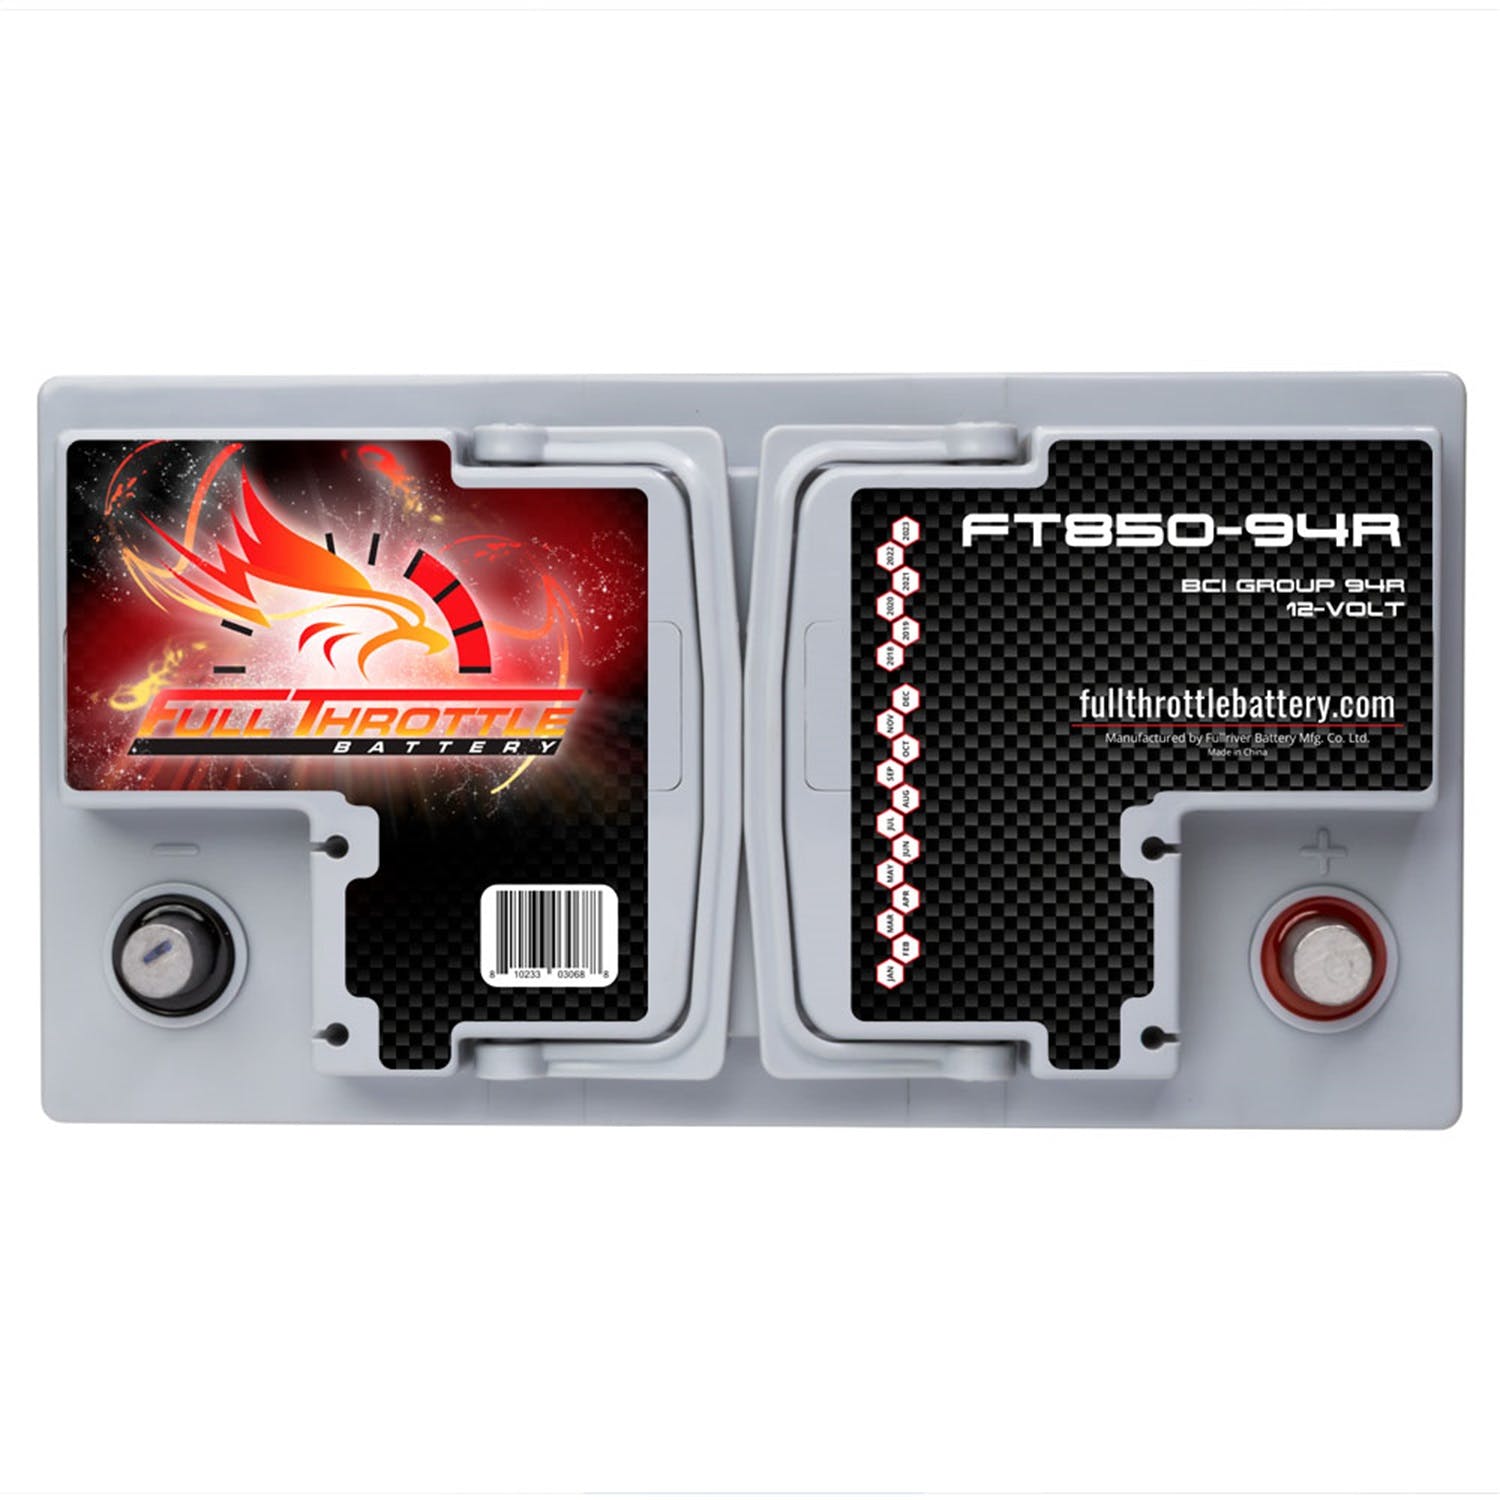 Fullriver Battery FT850-94R Full Throttle 12V Automotive Battery